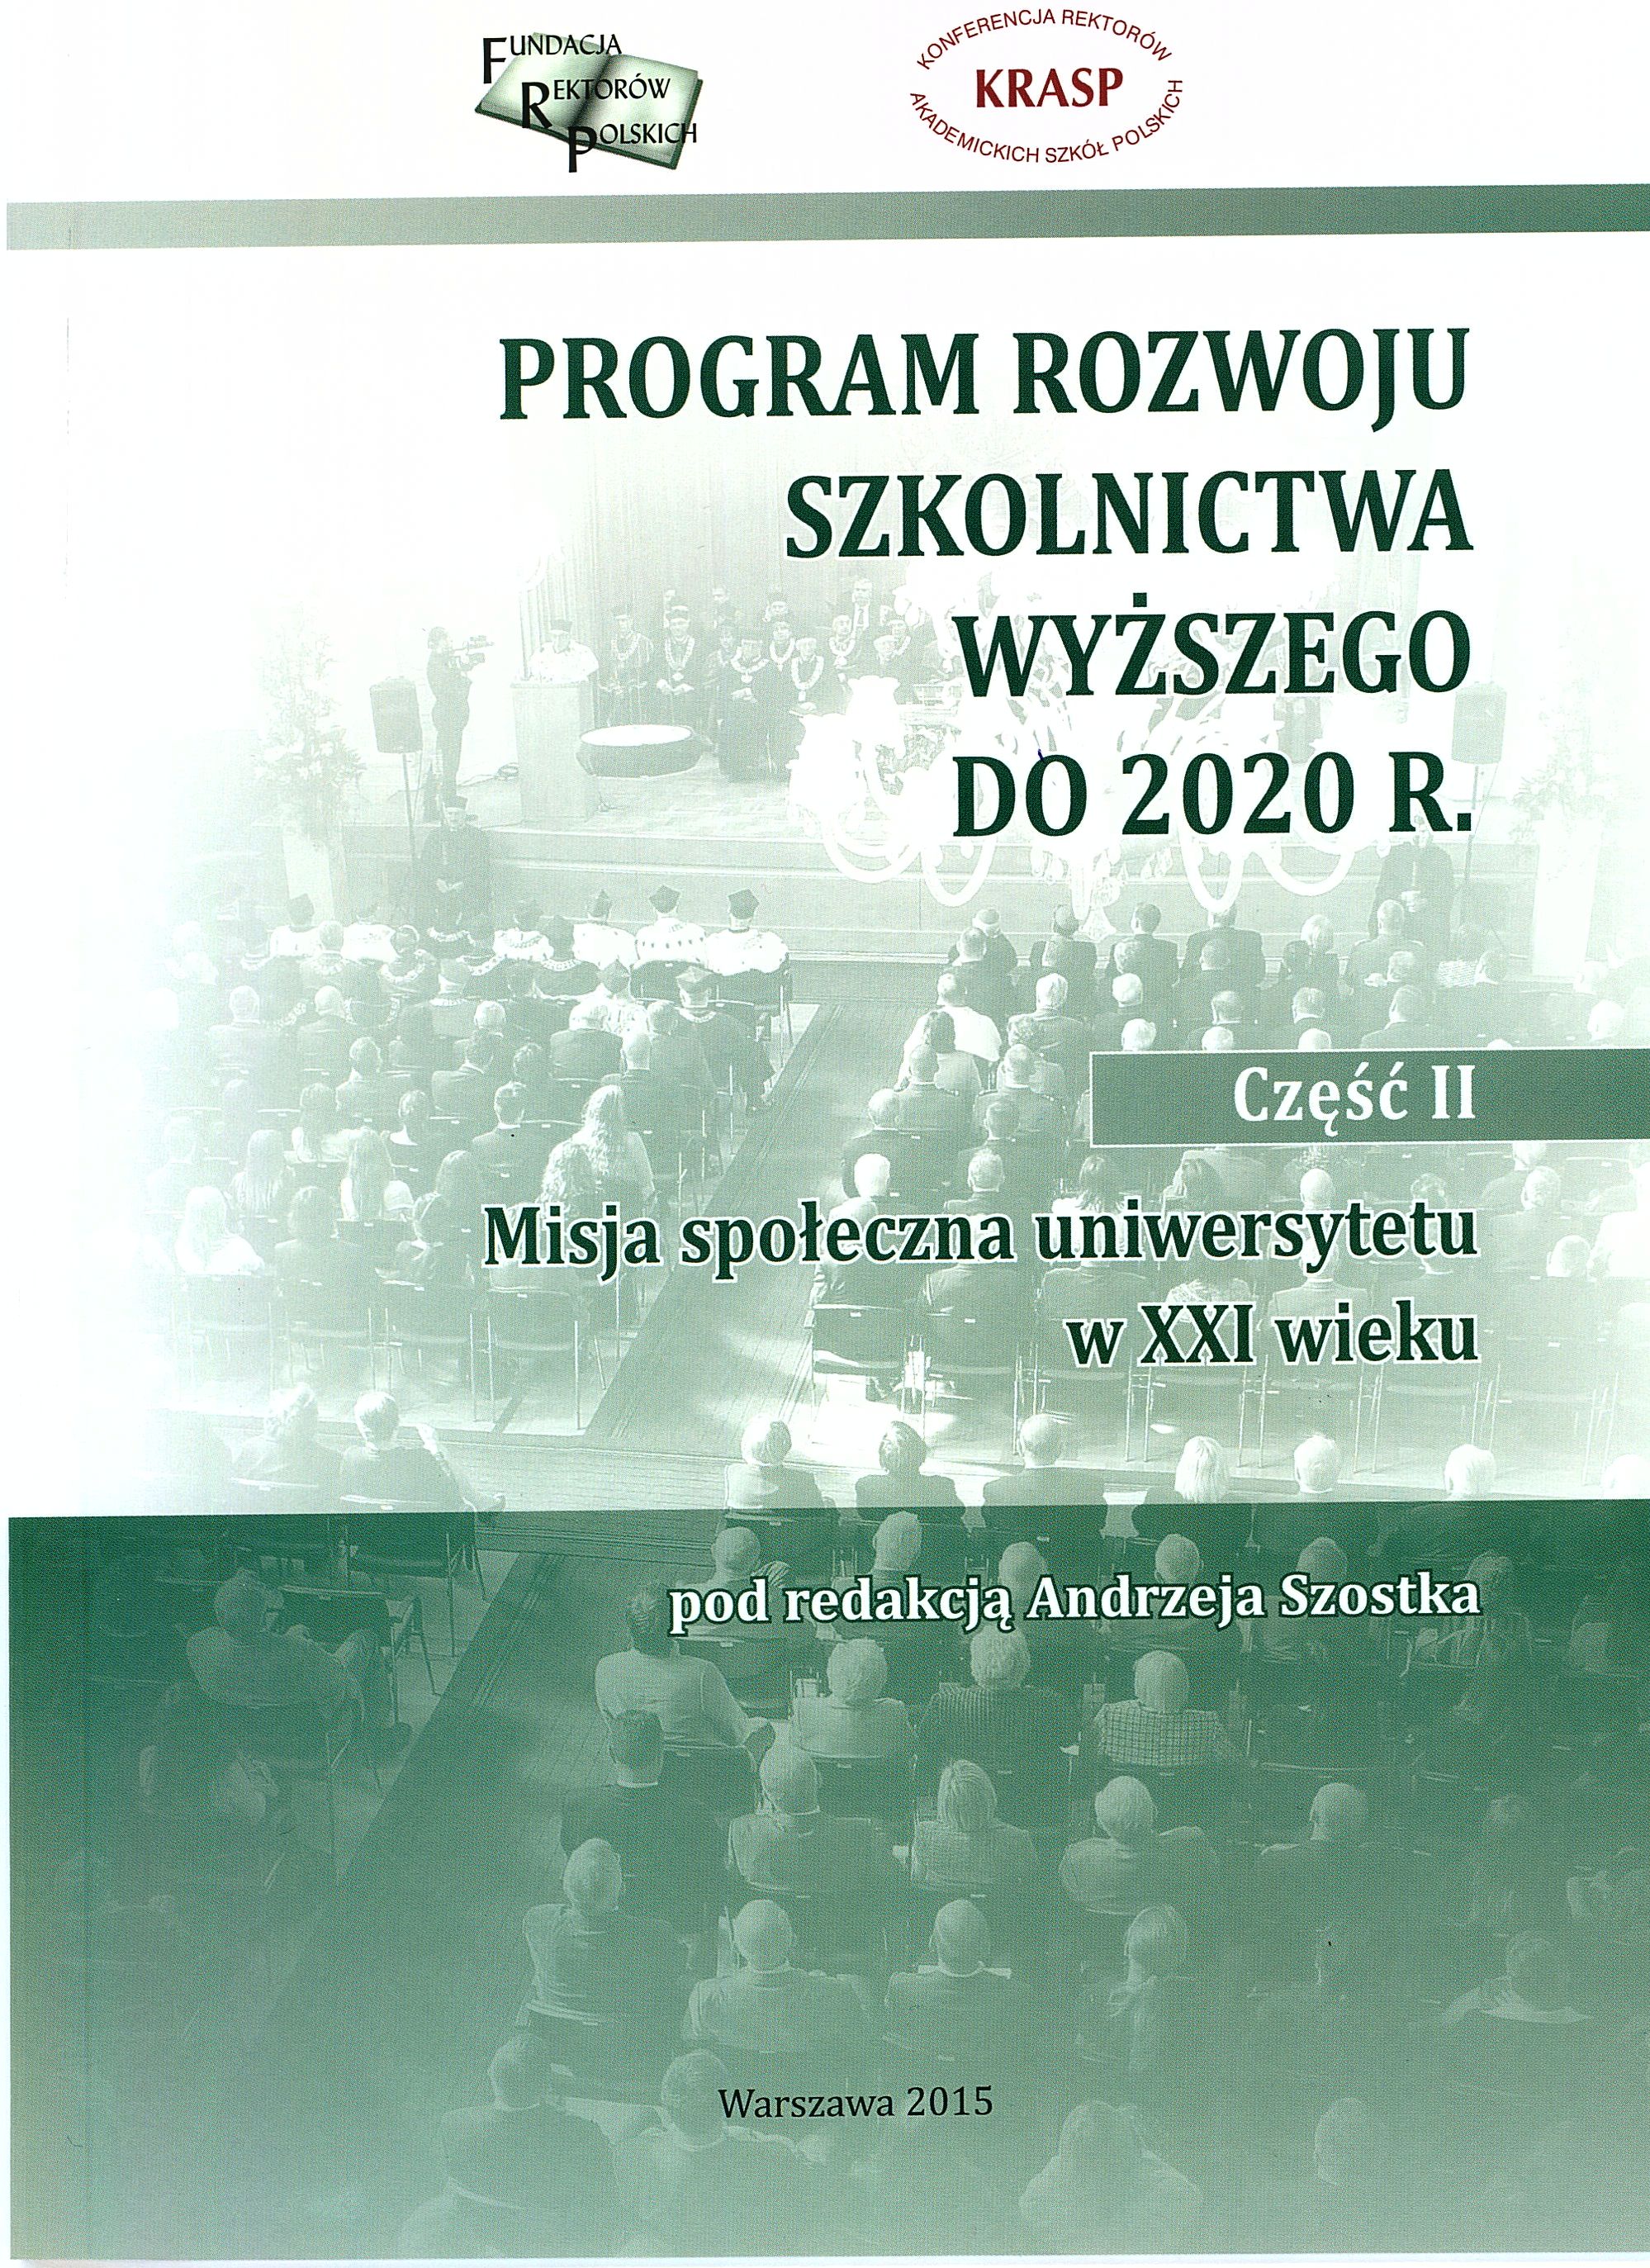 Program rozwoju szkolnictwa wyższego do 2020 r. Część II - Misja społeczna uniwersytetu w XXI wieku